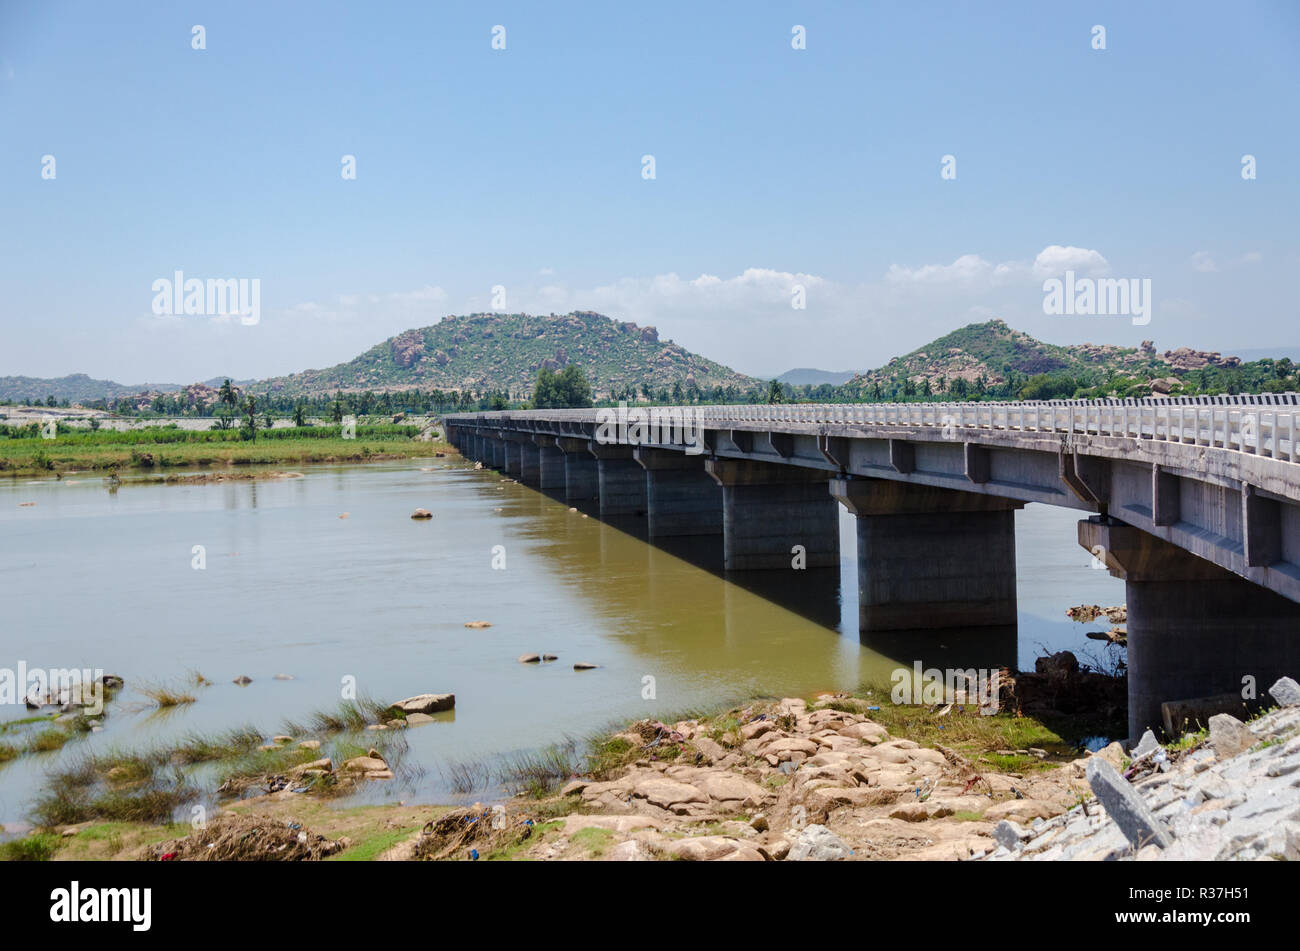 Vista de la conexión Hospet Gangavati al puente sobre el río Tungabhadra en Karnataka, India Foto de stock